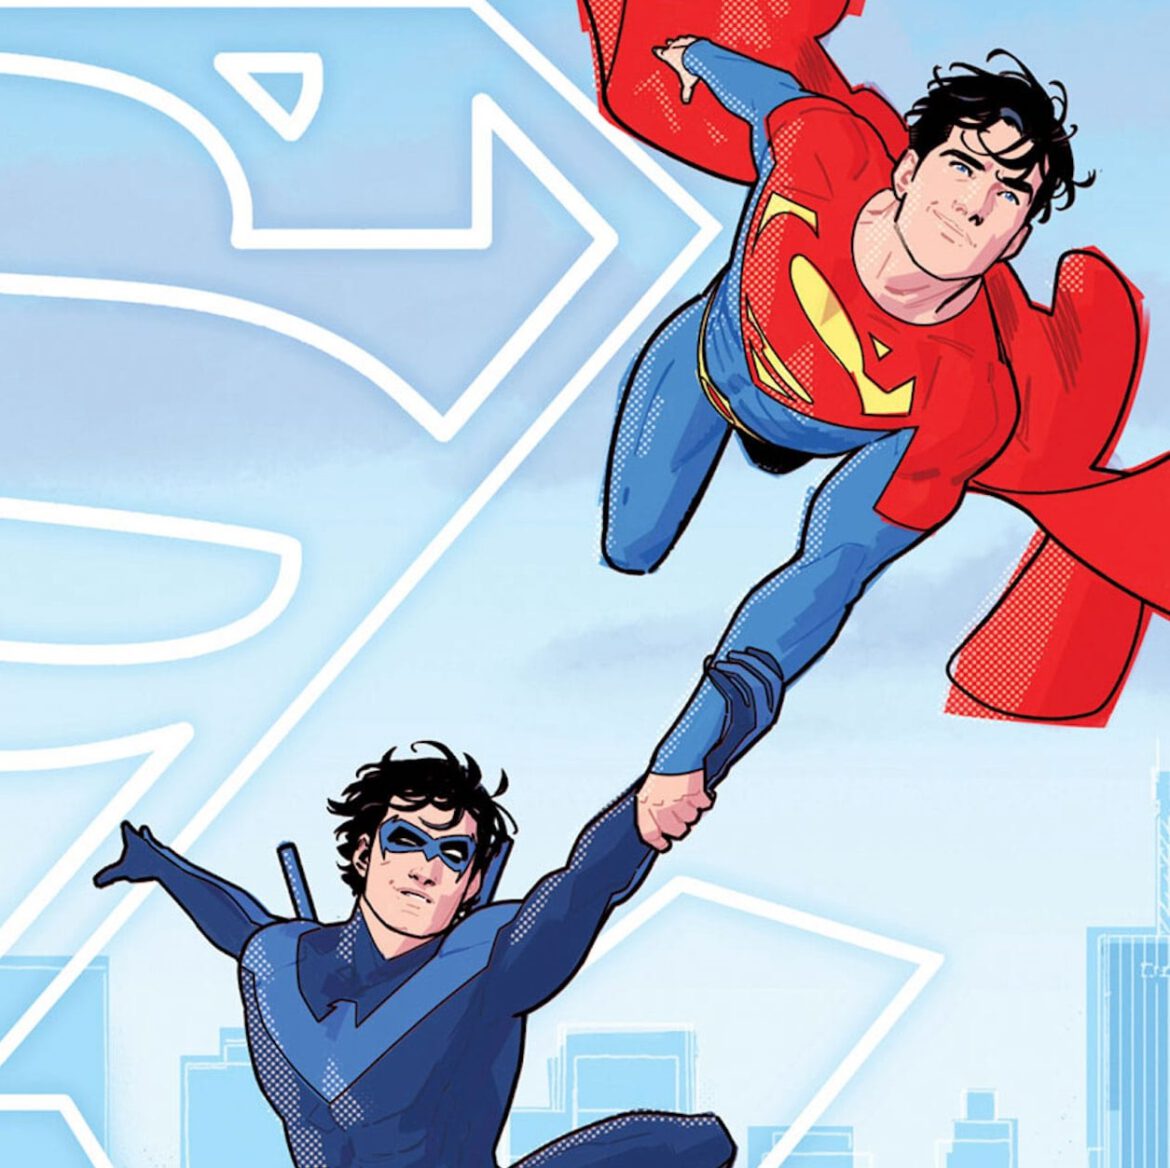 Superman: Son of Kal-El #9